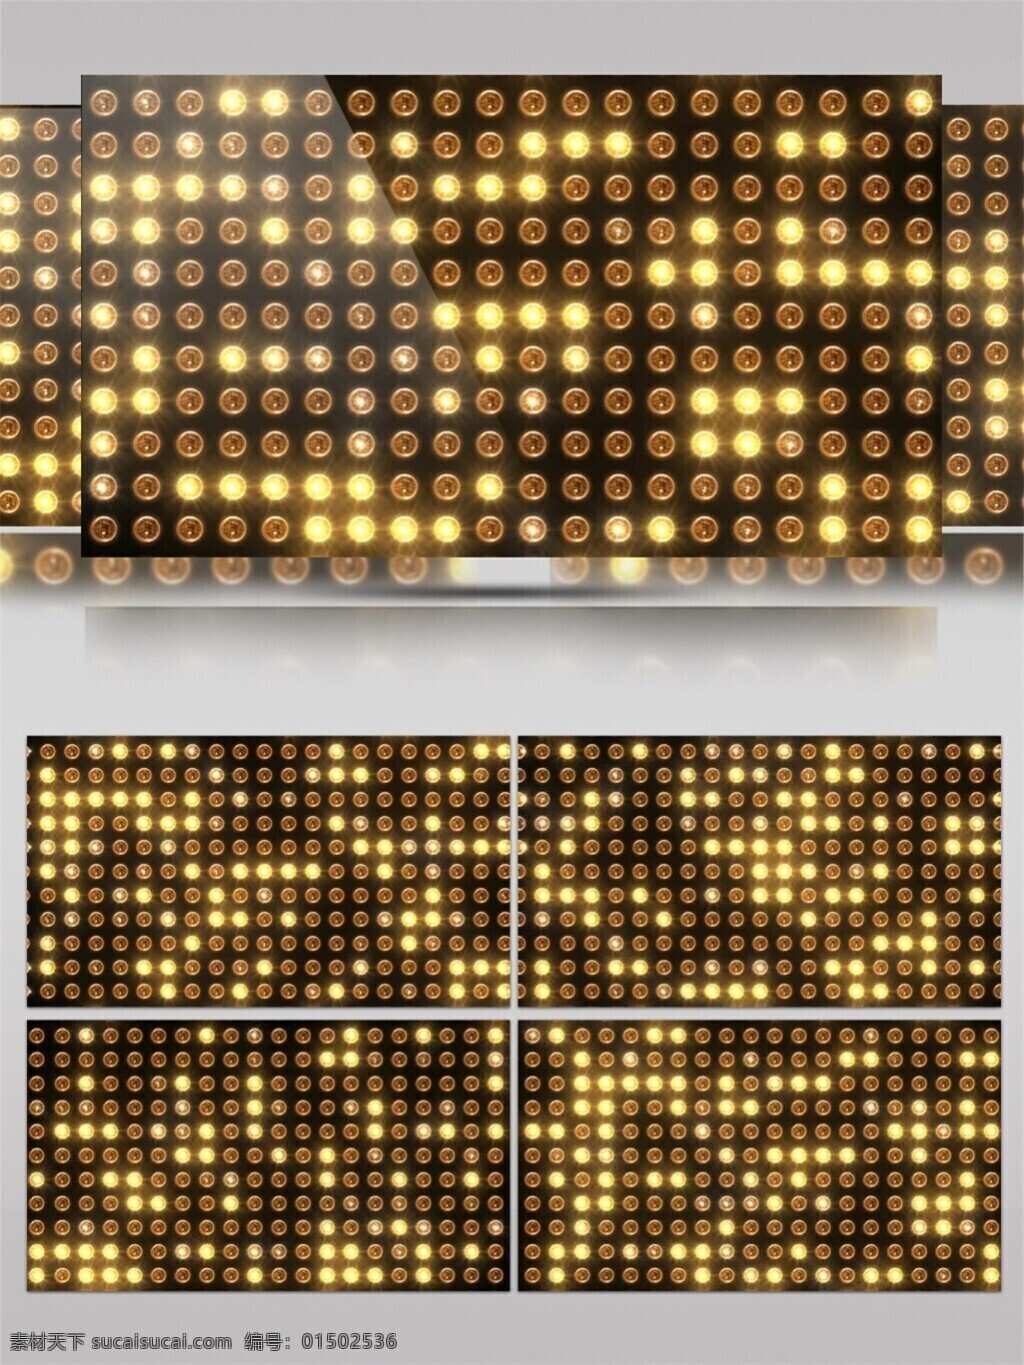 金色 图腾 光板 视频 点阵 光束 节目灯光 视觉享受 数码 唯美背景素材